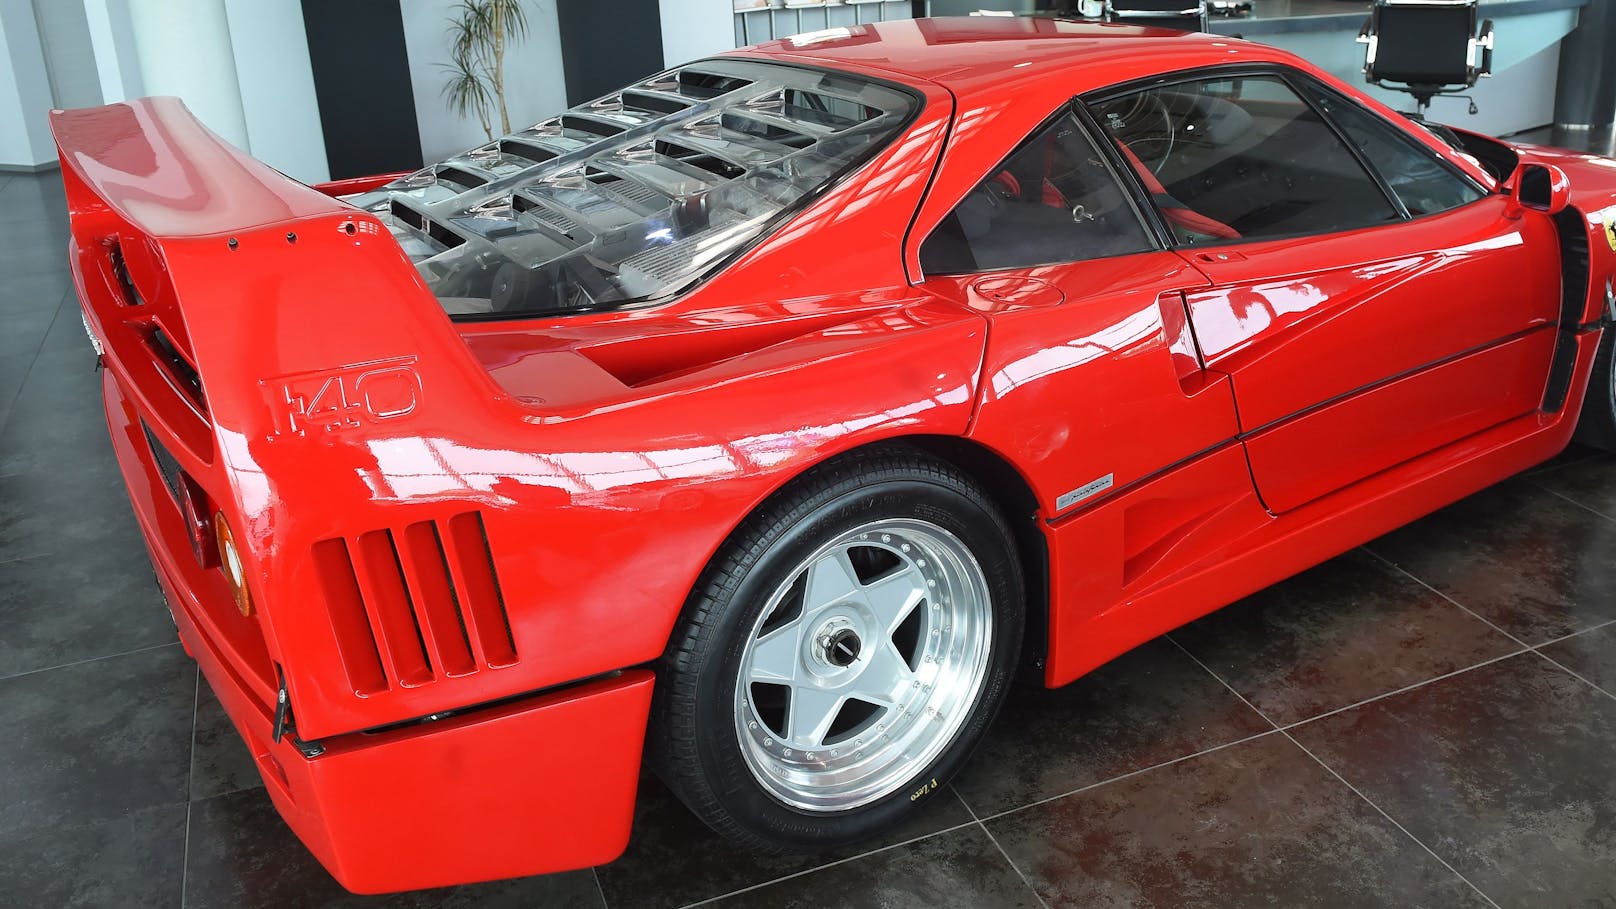 Der Ferrari F40 wird auch "Enzo Ferrari" genannt, da Enzo selbst dieses Projekt&nbsp;1986 antrieb.